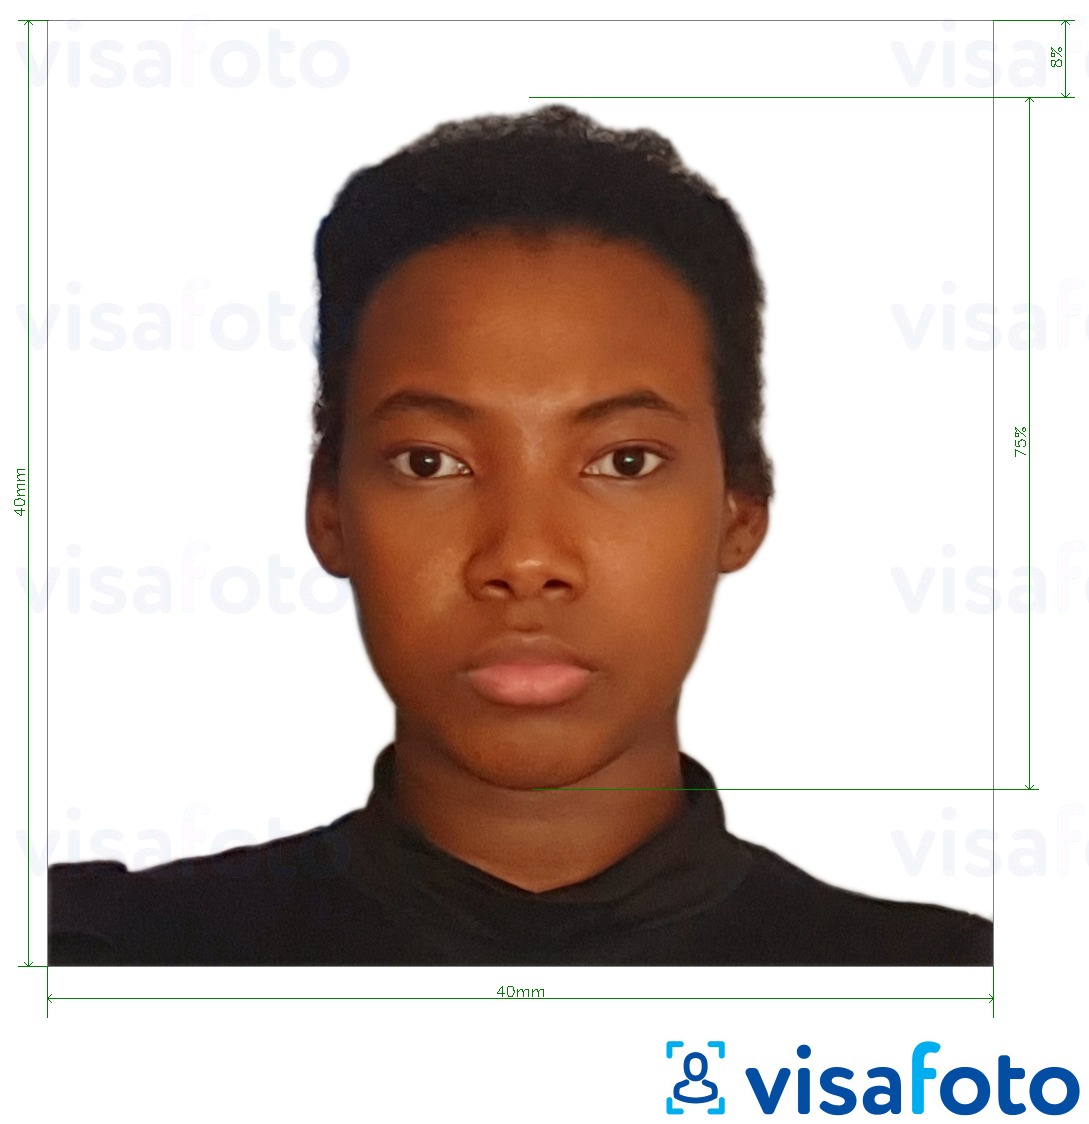 نمونه ی یک عکس برای گذرنامه کامرون 4x4 سانتی متر (40x40 میلی متر) با مشخصات دقیق